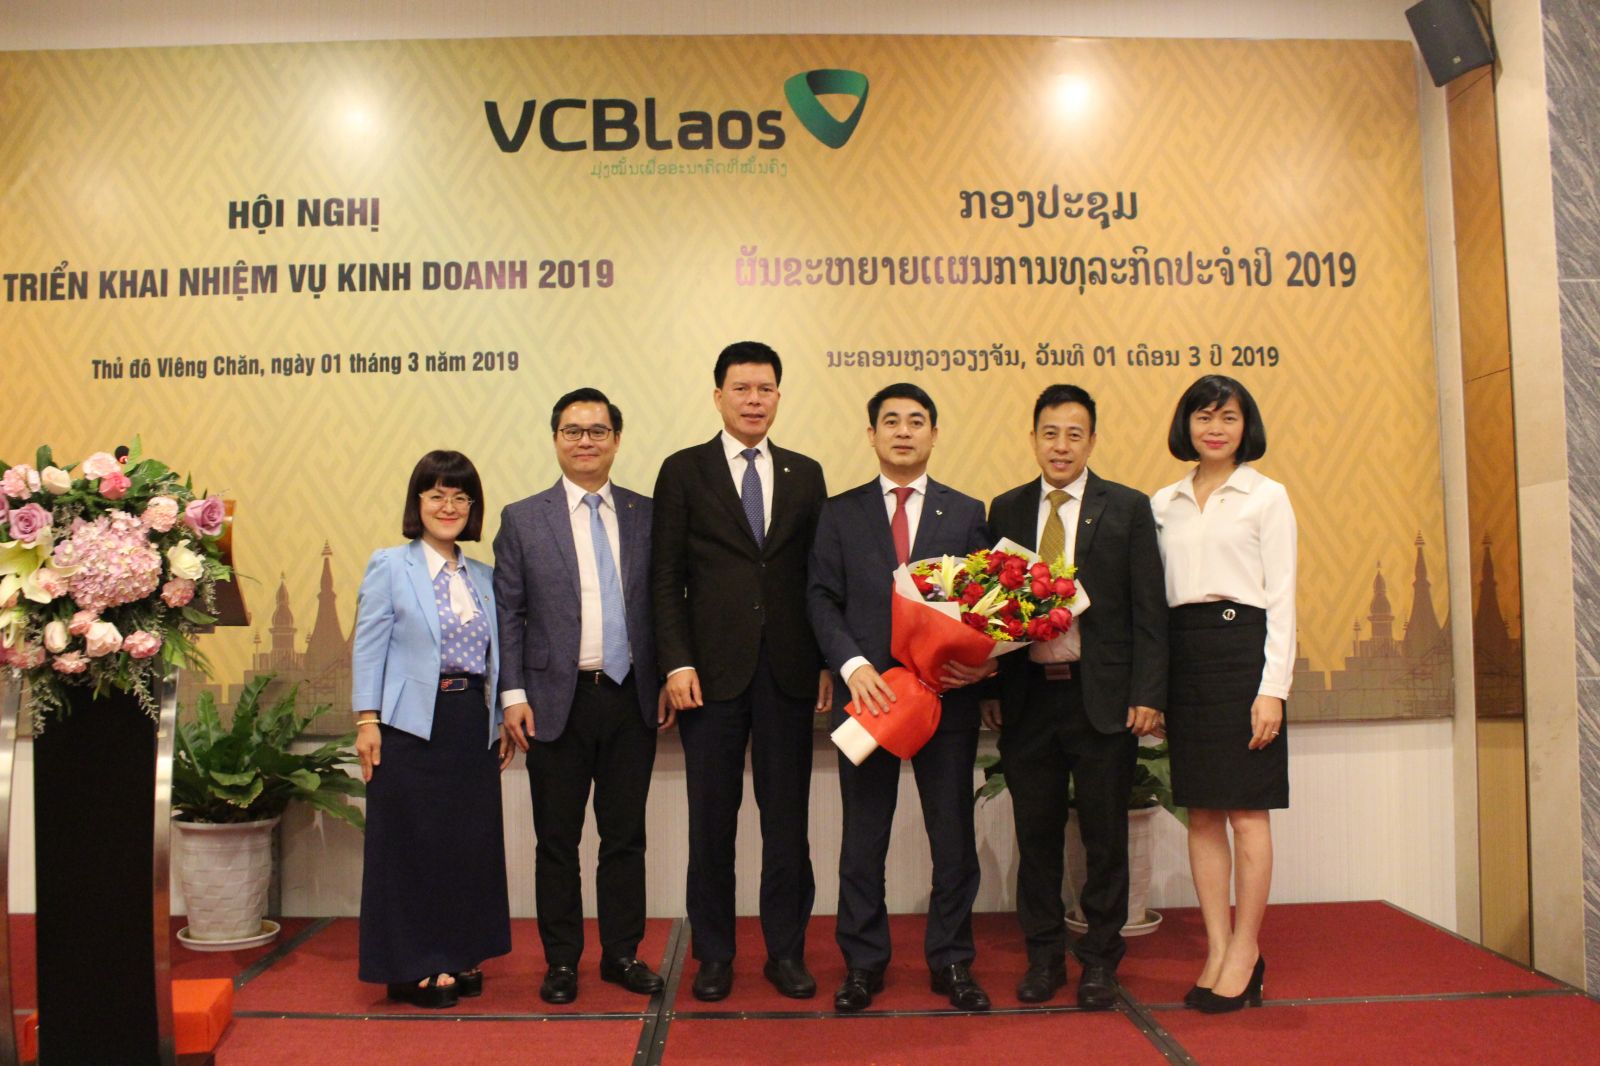 Ông Phạm Mạnh Thắng – Phó Tổng Giám đốc Vietcombank, Chủ tịch HĐQT Vietcombank Lào (thứ 3 từ trái sang) cùng các thành viên HĐQT Vietcombank Lào tặng bó hoa tươi thắm cho ông Nghiêm Xuân Thành - Chủ tịch HĐQT Vietcombank (thứ 3 từ phải sang), bày tỏ cảm ơn đối với sự quan tâm, sát sao của Ban Lãnh đạo Vietcombank dành cho hoạt động của Vietcombank Lào